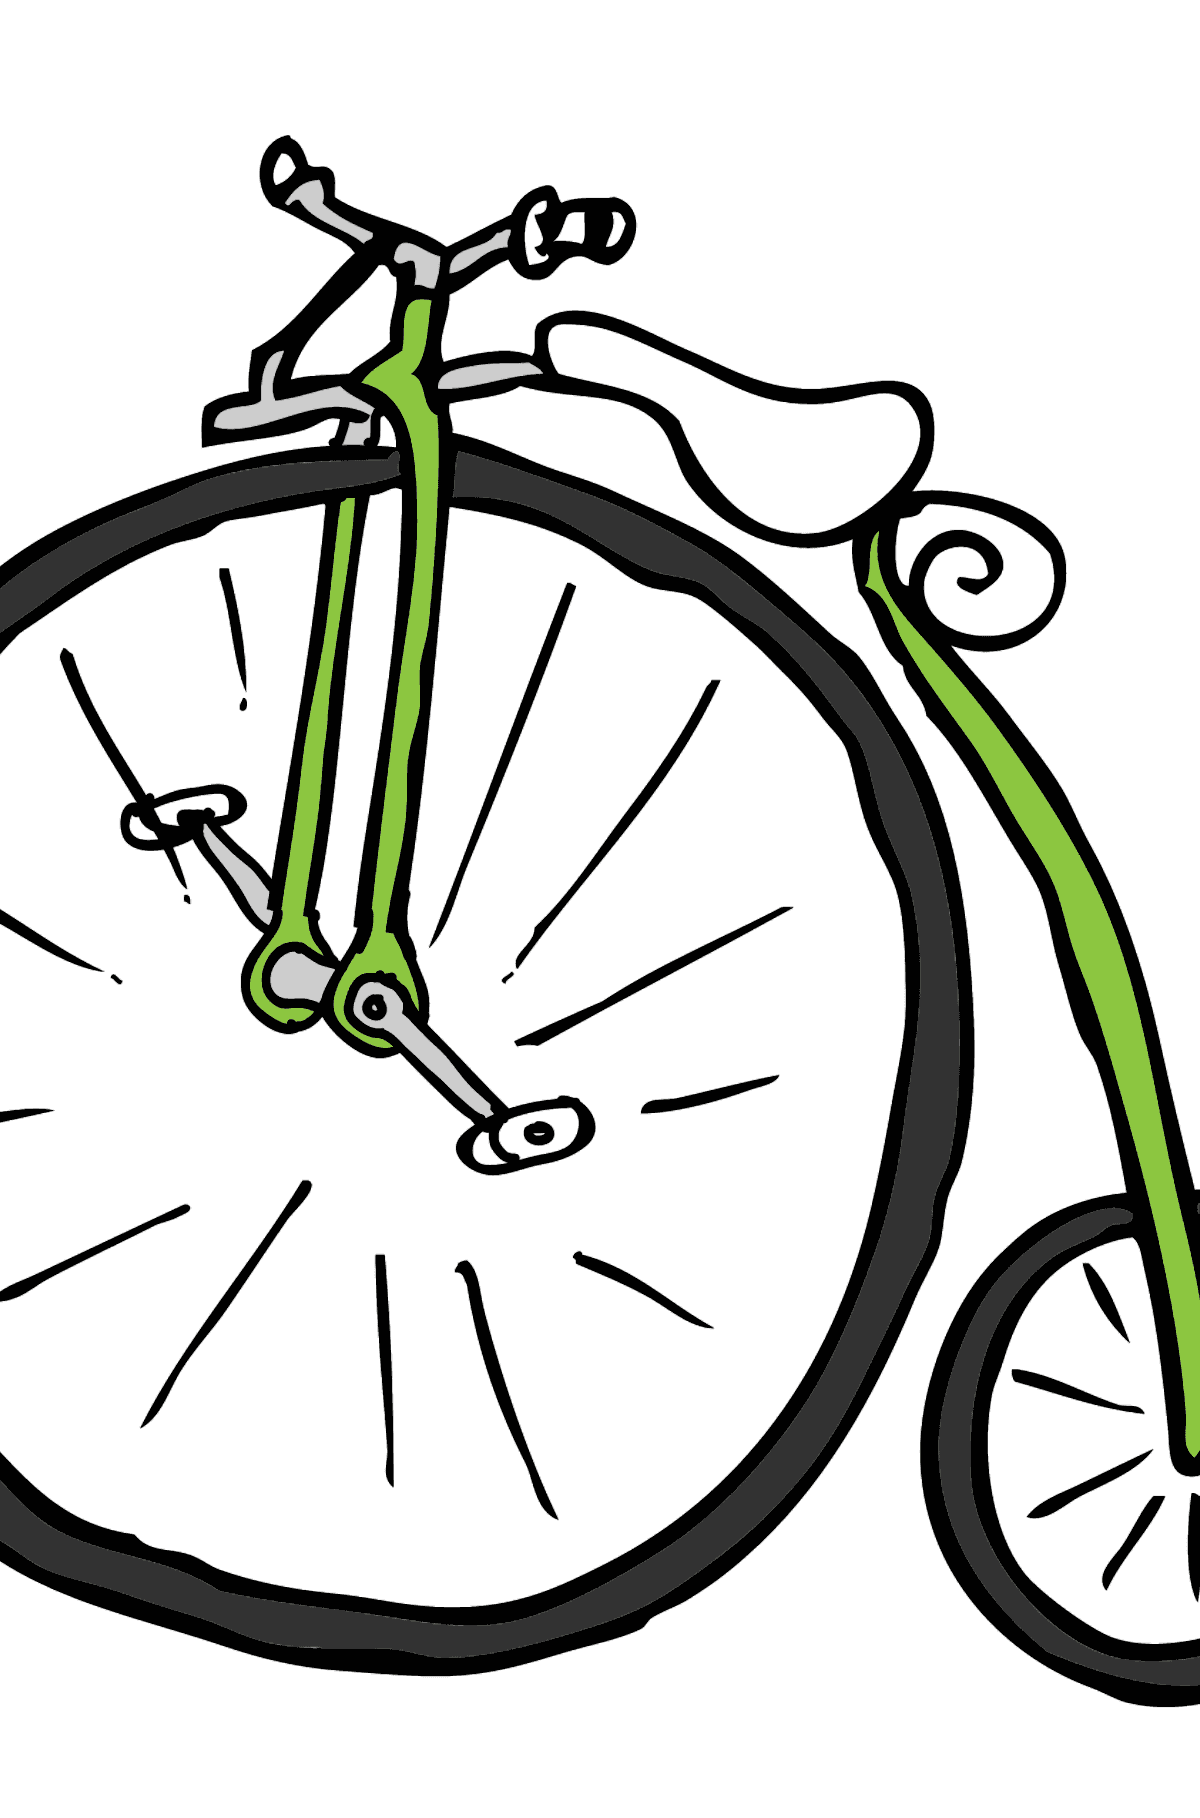 Dibujo para Colorear - Una Bicicleta de Ruedas Altas- Monociclo - Dibujos para Colorear para Niños